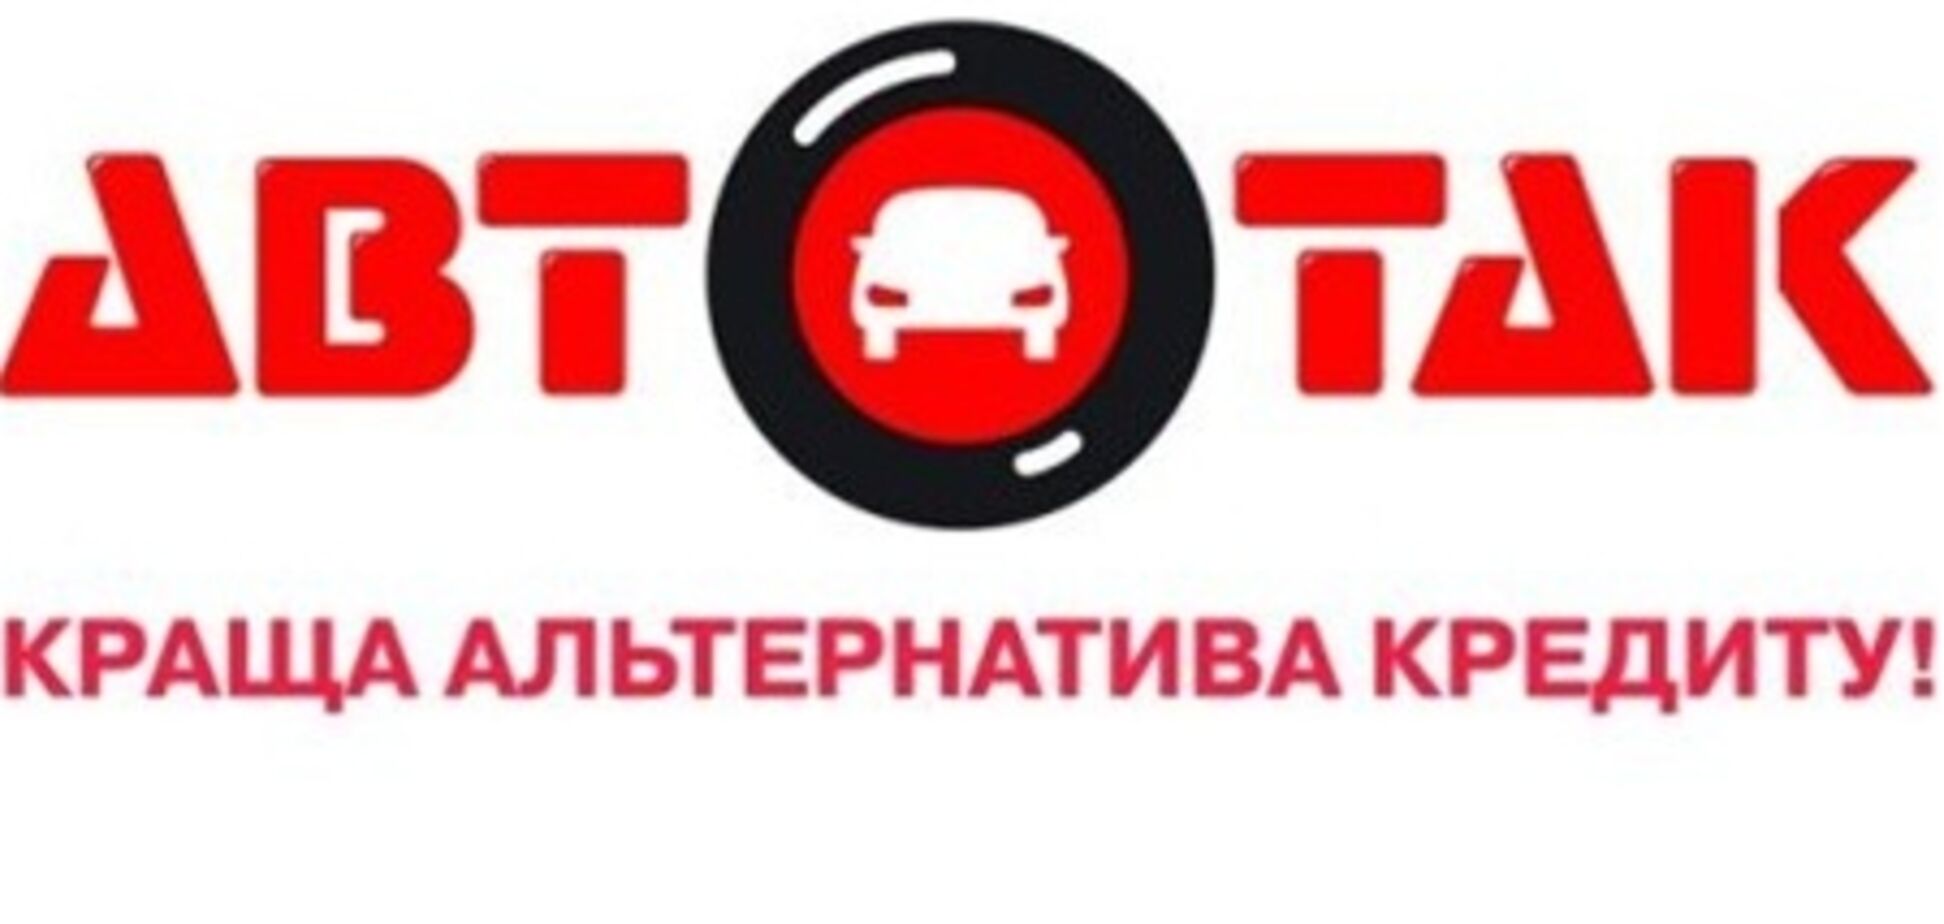 Почему АвтоТак — не развод? www.autotak.com.ua